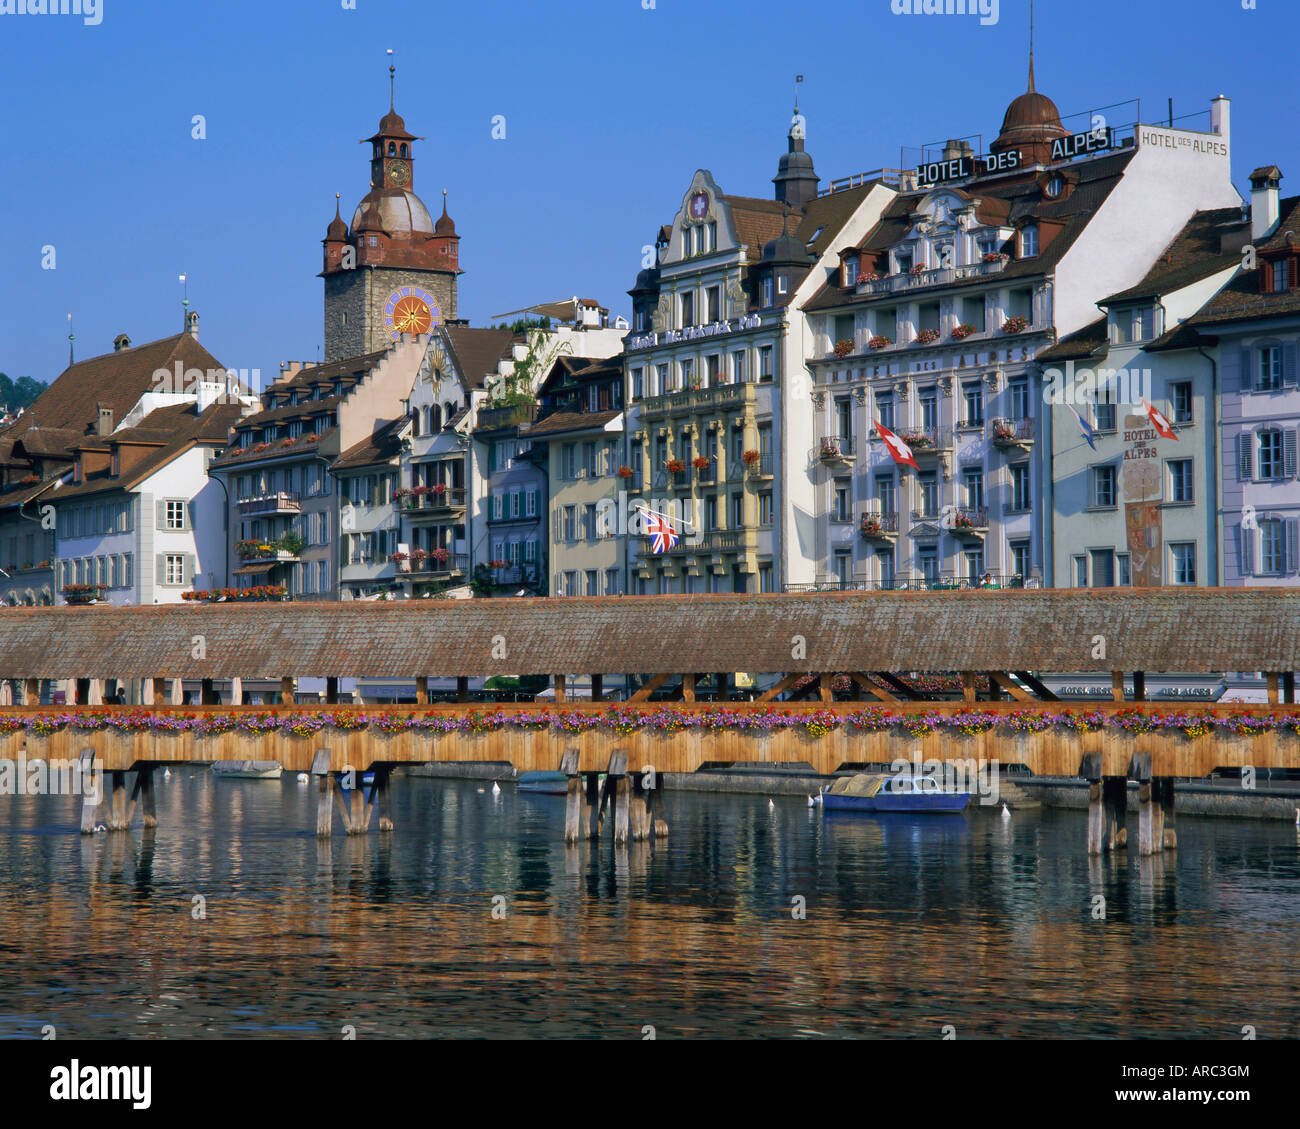 Kapellbrucke, pont en bois couvert, sur la rivière Reuss, Lucerne (Luzern), la Suisse, l'Europe Banque D'Images